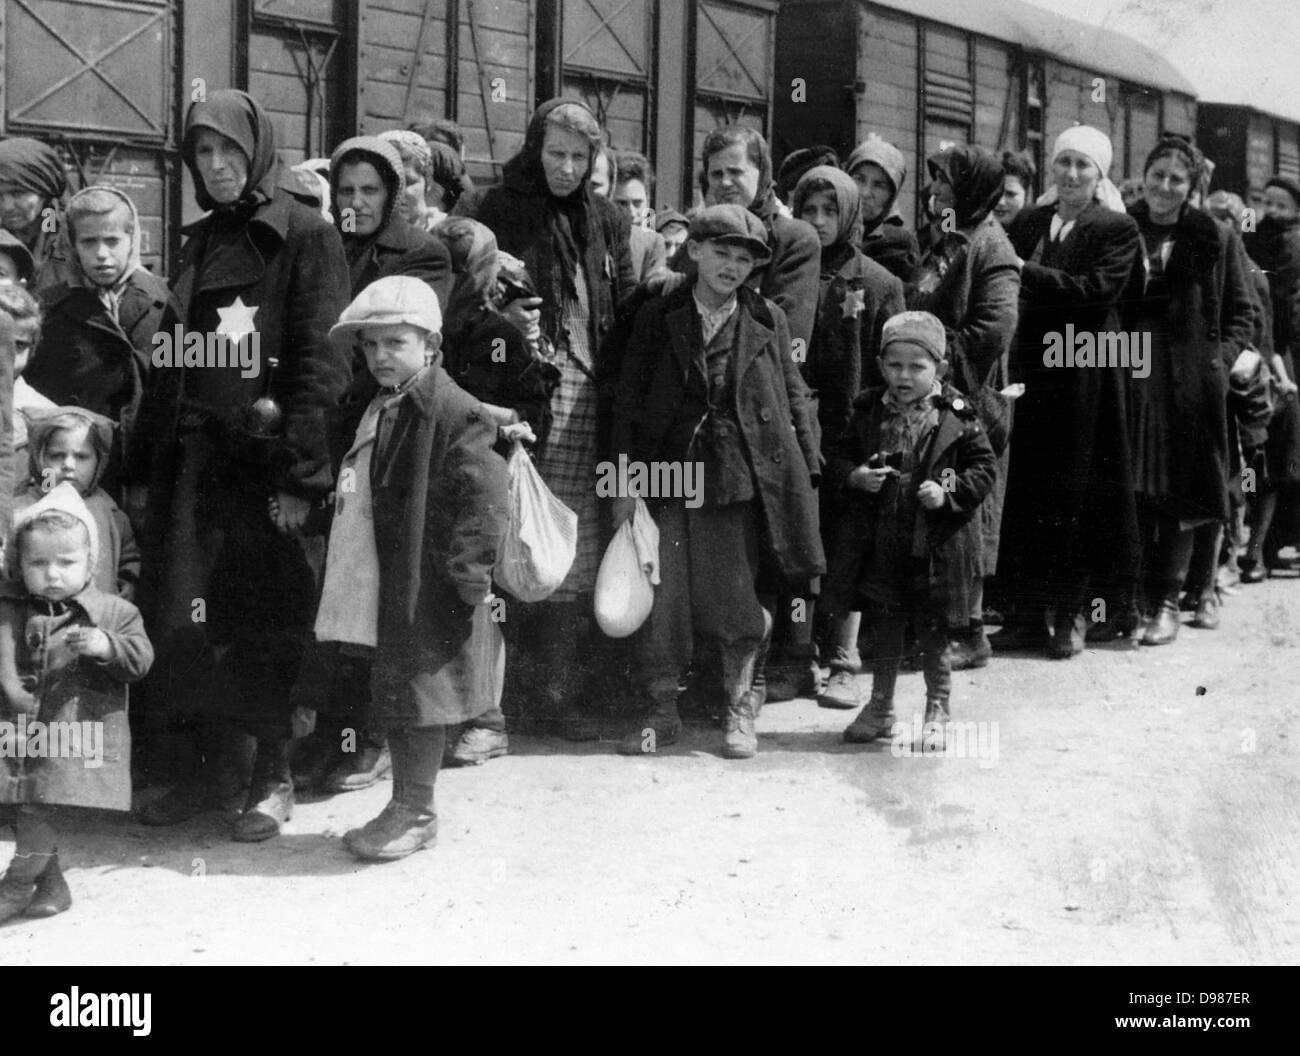 Ankunft eines Zuges mit Juden nach Auschwitz in Polen deportiert. Auschwitz-Birkenau (1940-1945) war die größte der Deutschen Konzentrations- und Vernichtungslager. 1,1 Millionen Menschen, 90 Prozent von ihnen Juden dachten gibt es ums Leben gekommen sind, haben die meisten von ihnen in den Gaskammern. Stockfoto